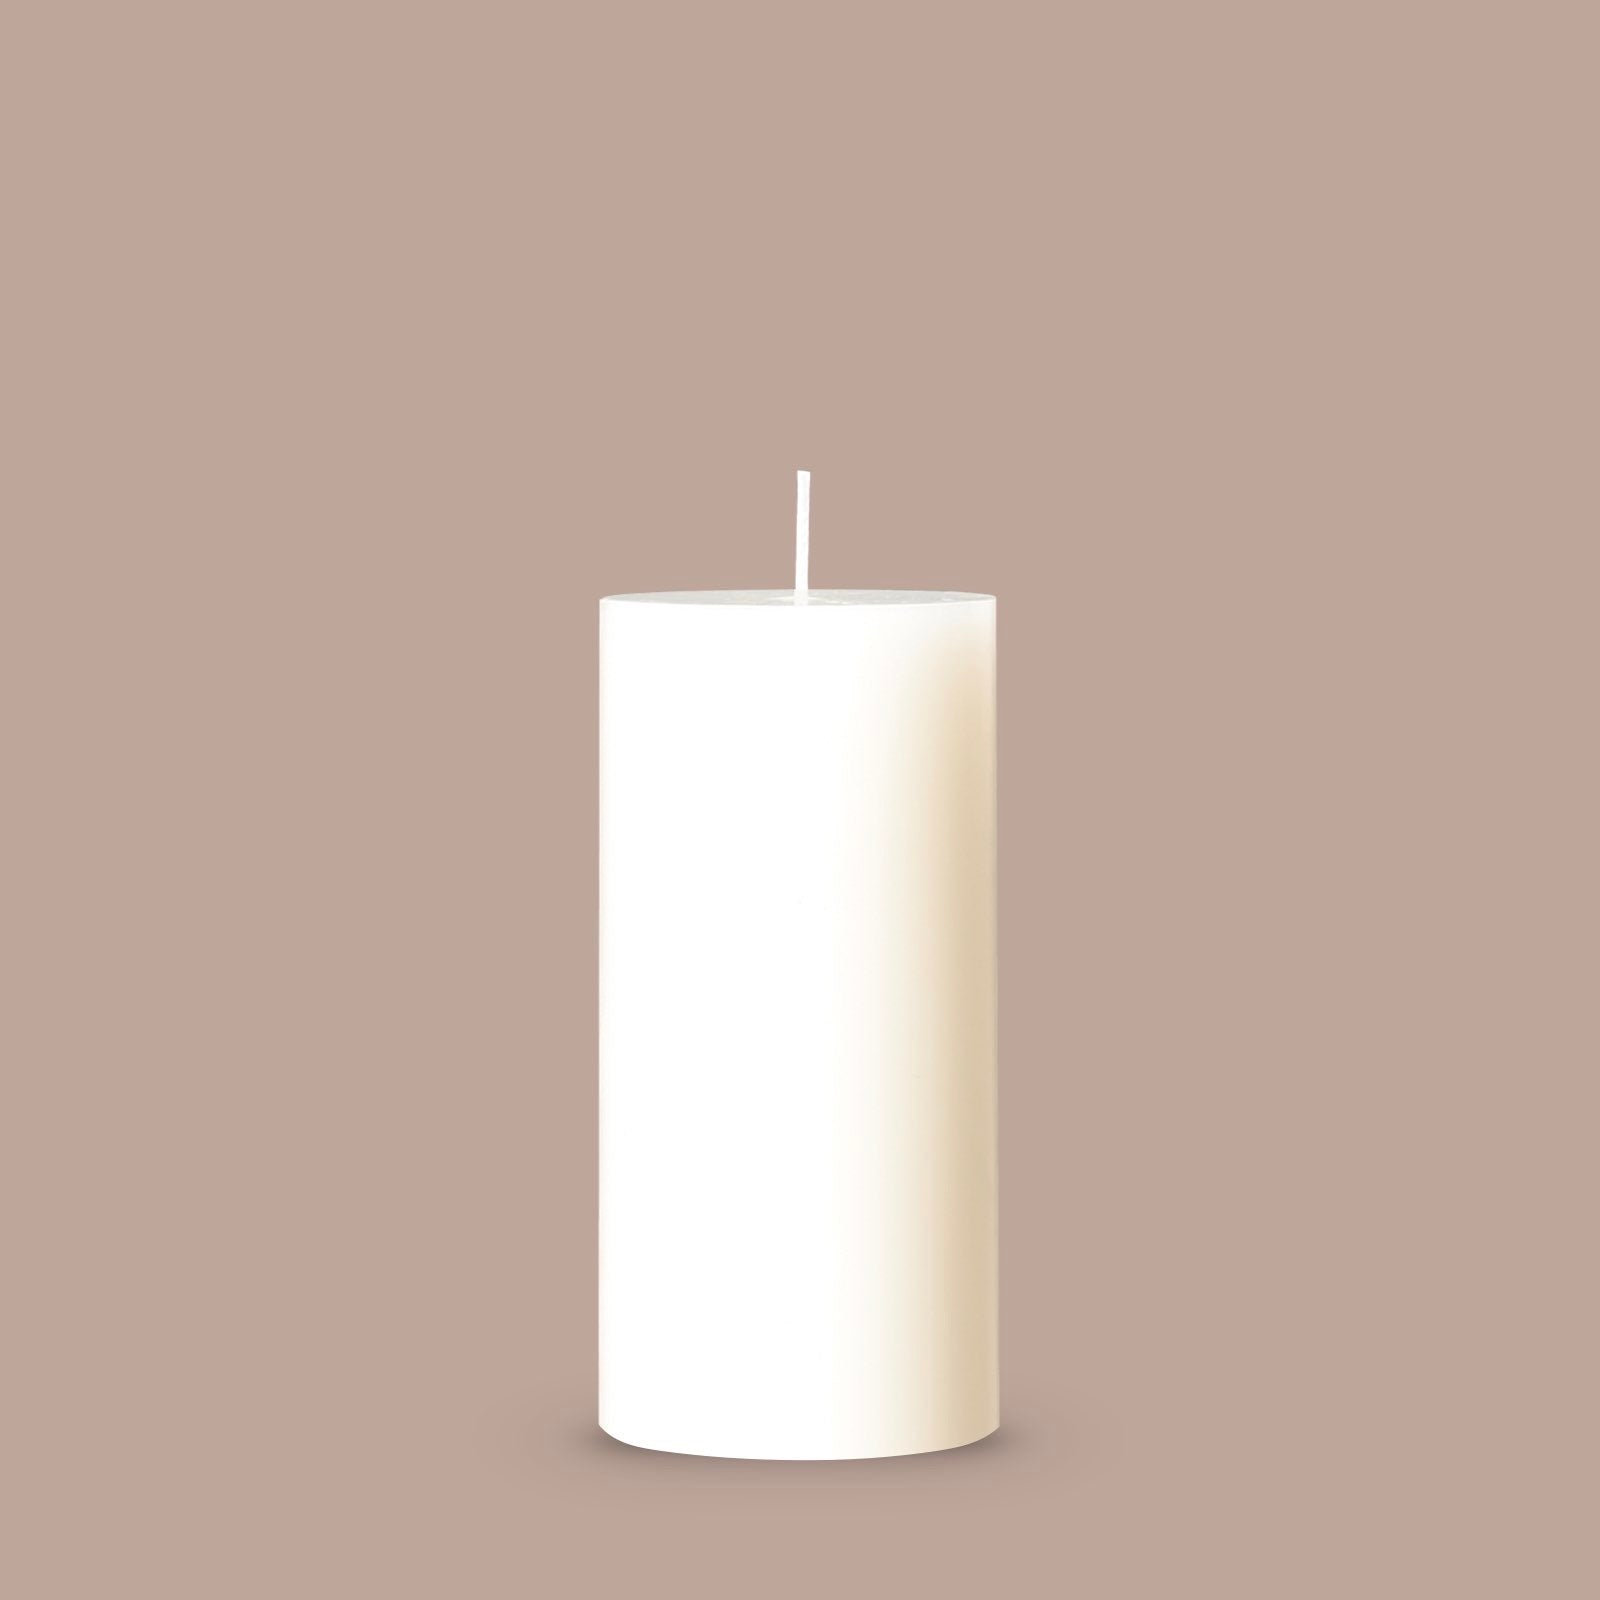 Large ivory white pillar candle